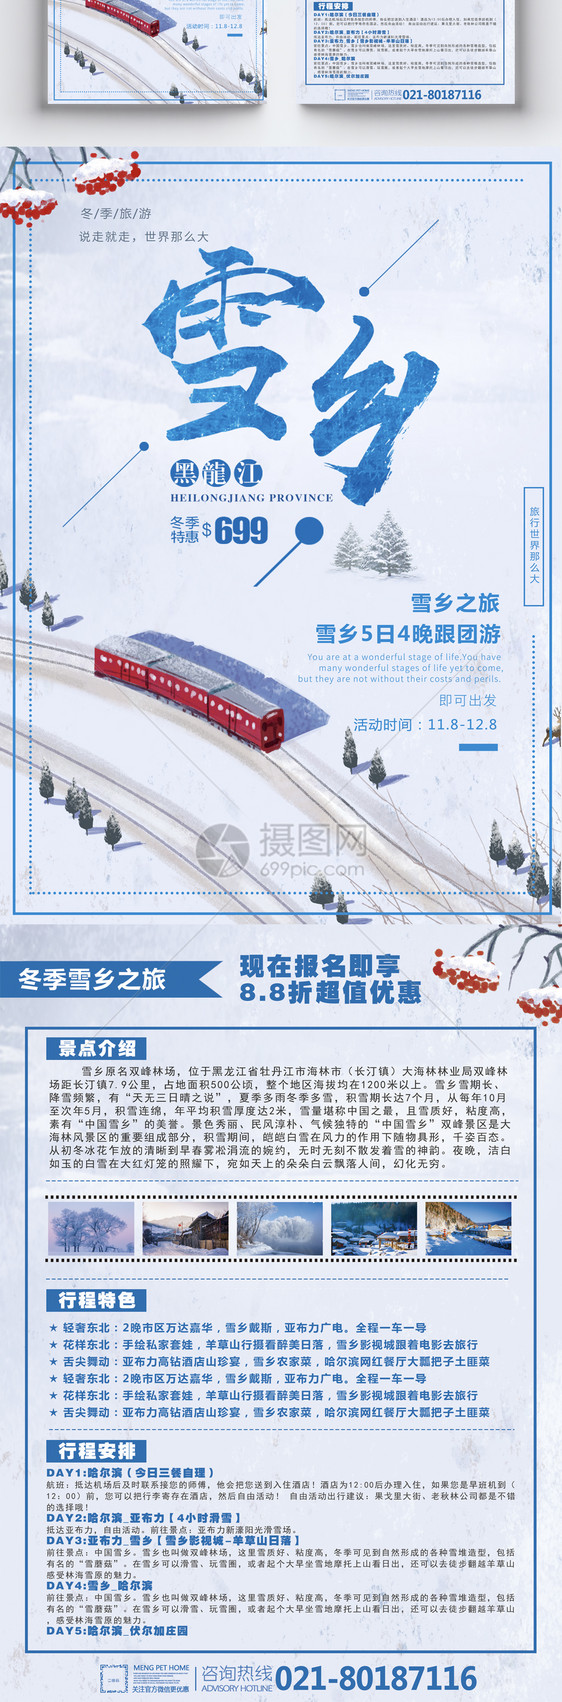 冬季雪乡黑龙江旅游宣传单图片